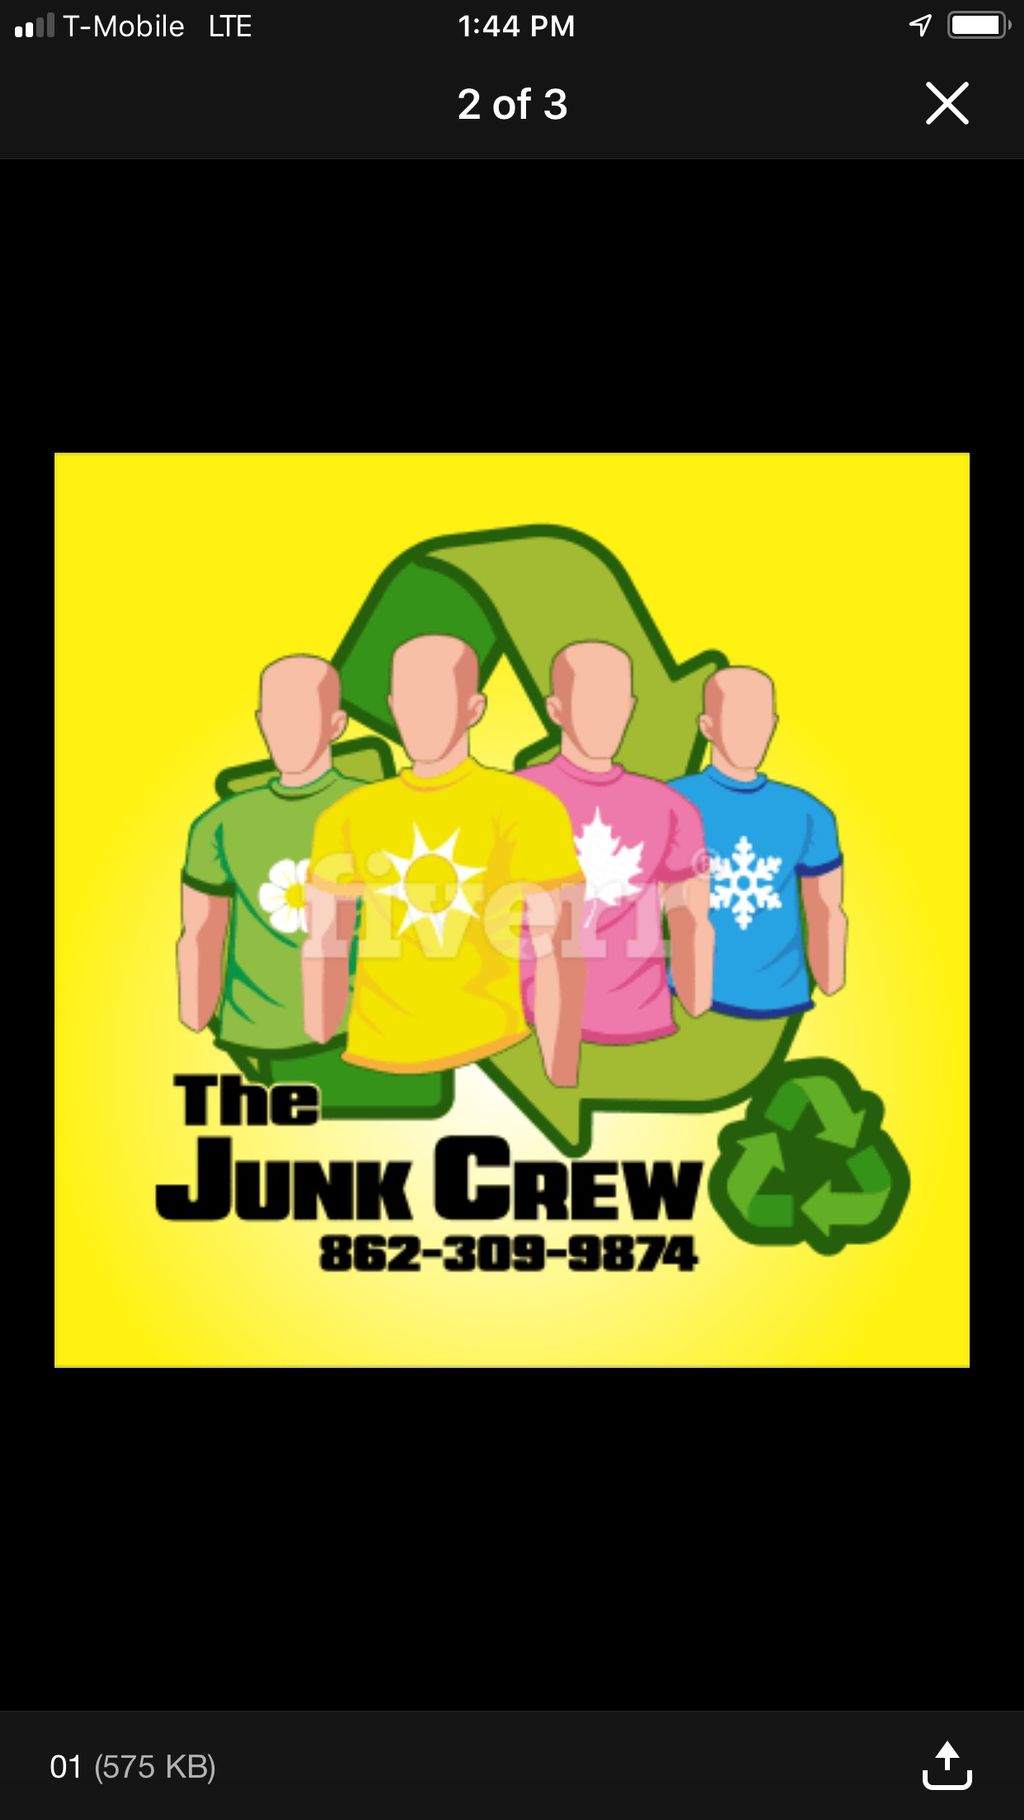 THE JUNK CREW LLC